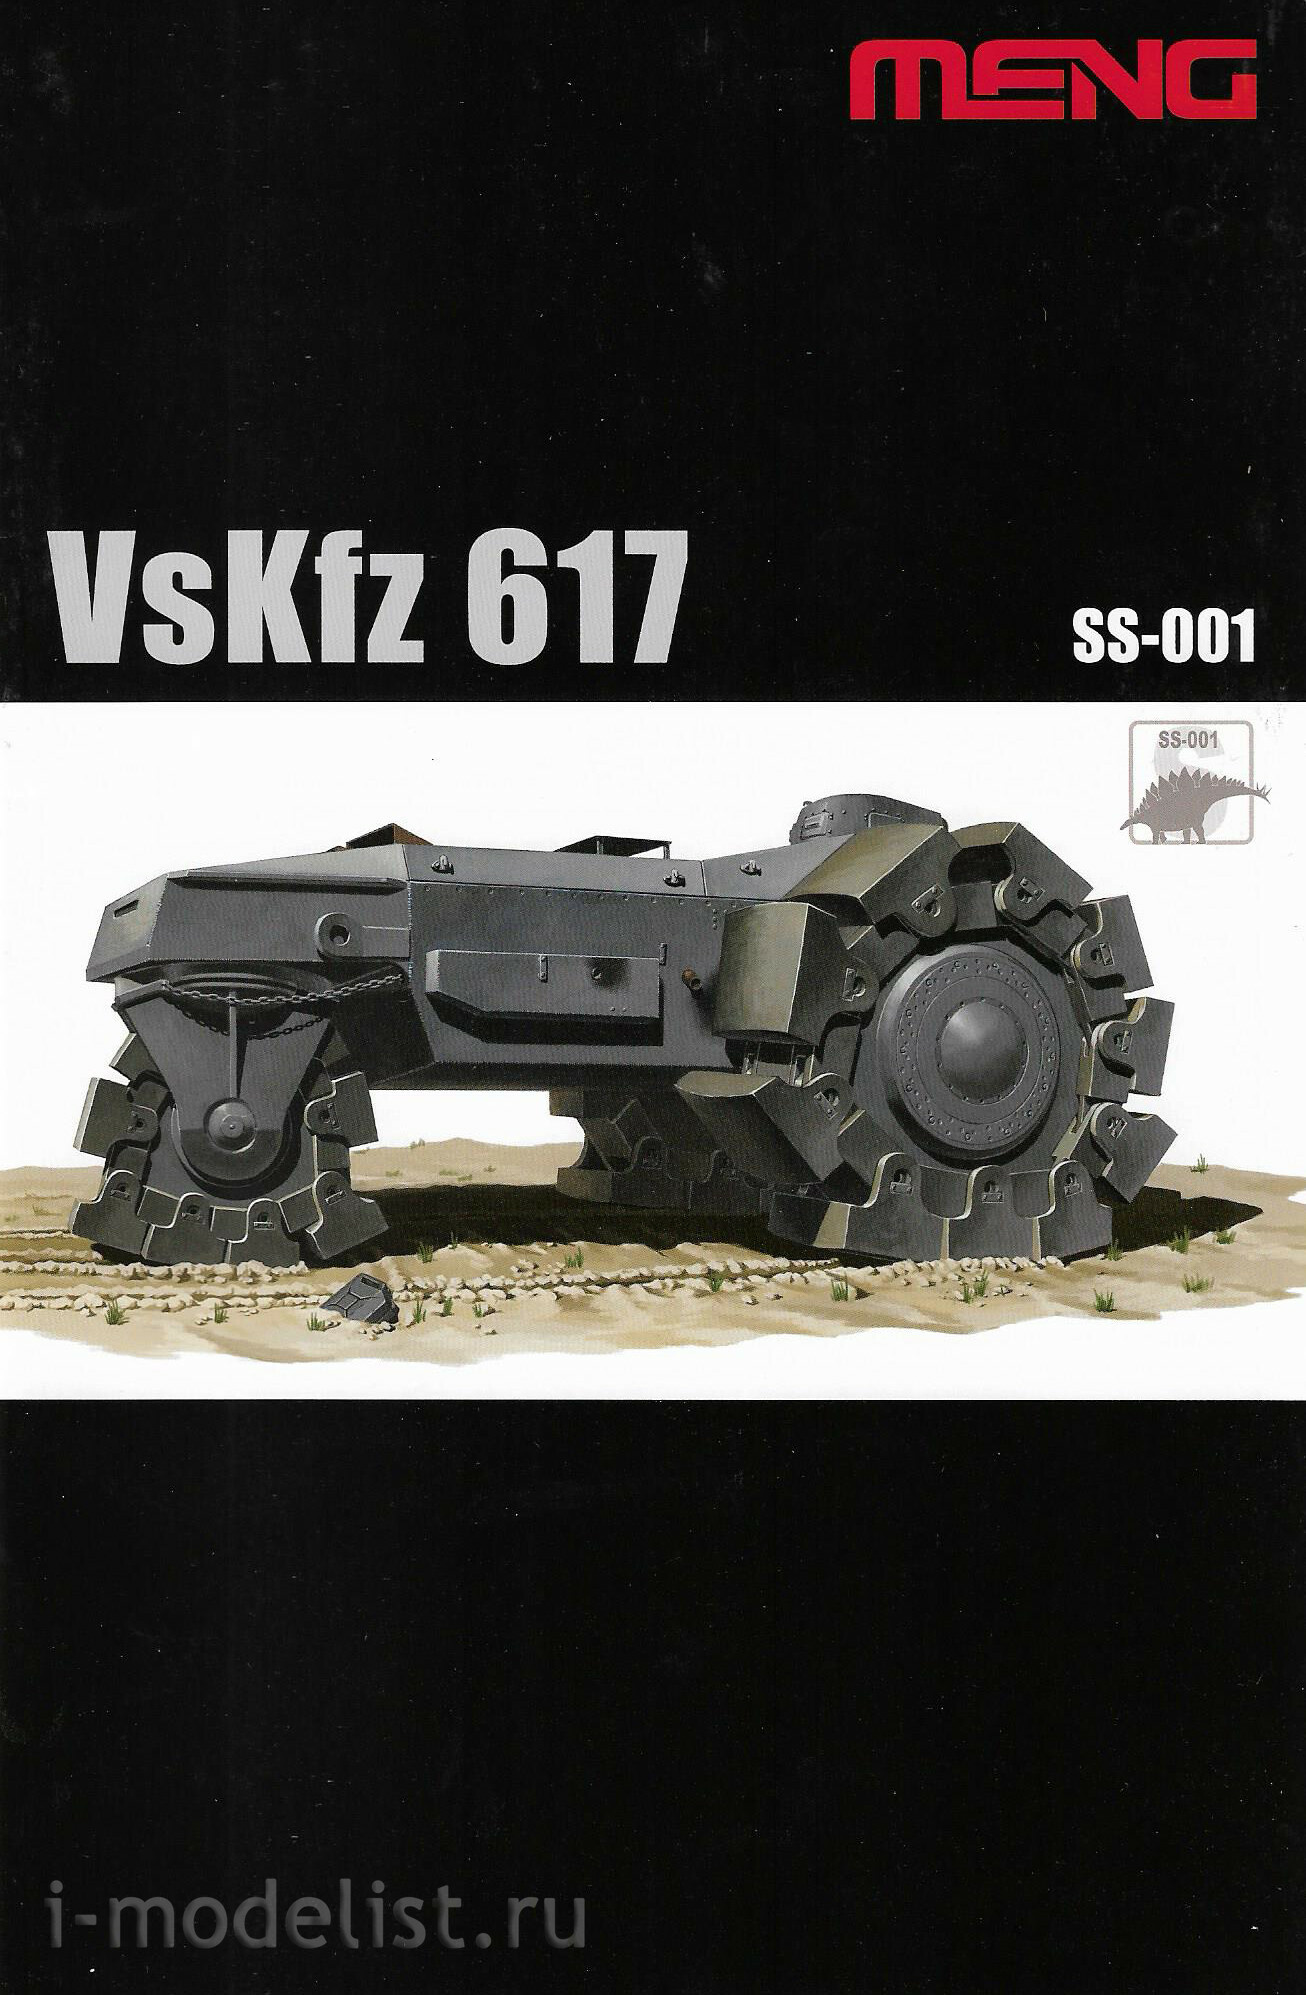 SS-001 Meng 1/35 Трактор VsKfz 617